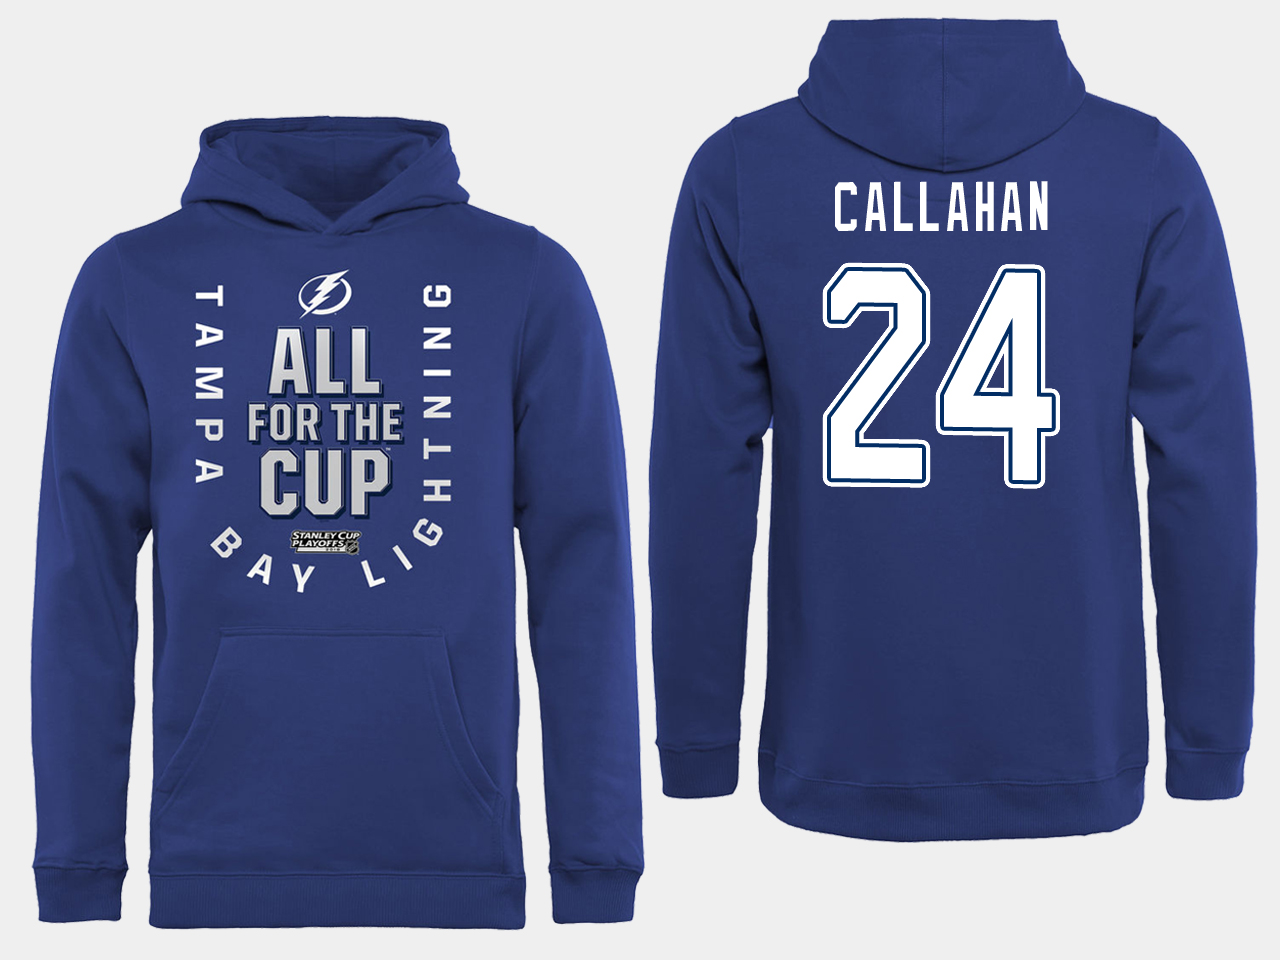 NHL Men adidas Tampa Bay Lightning #24 Callahan blue All for the Cup Hoodie->tampa bay lightning->NHL Jersey